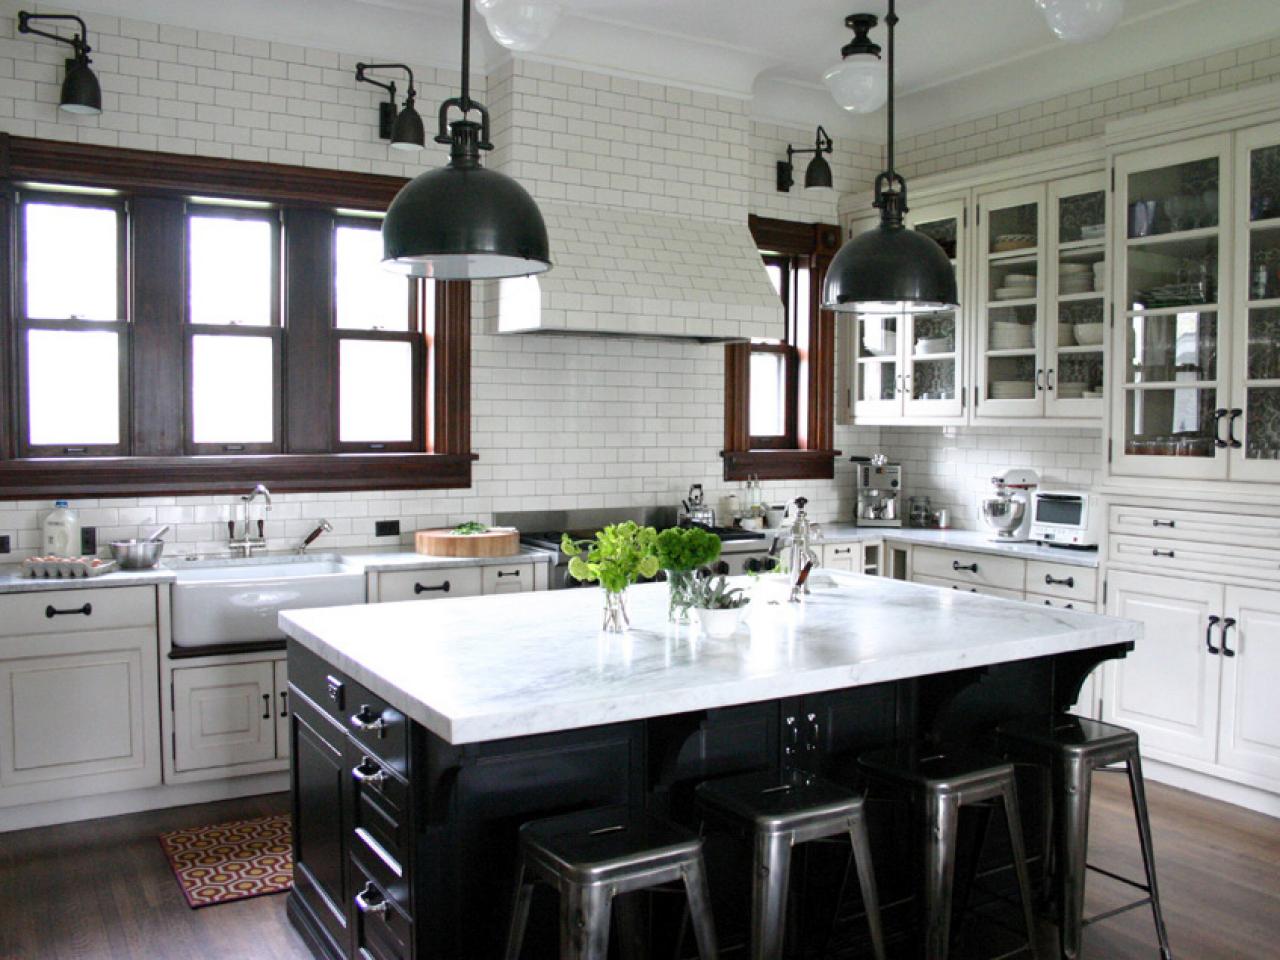 Preto e branco na decoração da cozinha